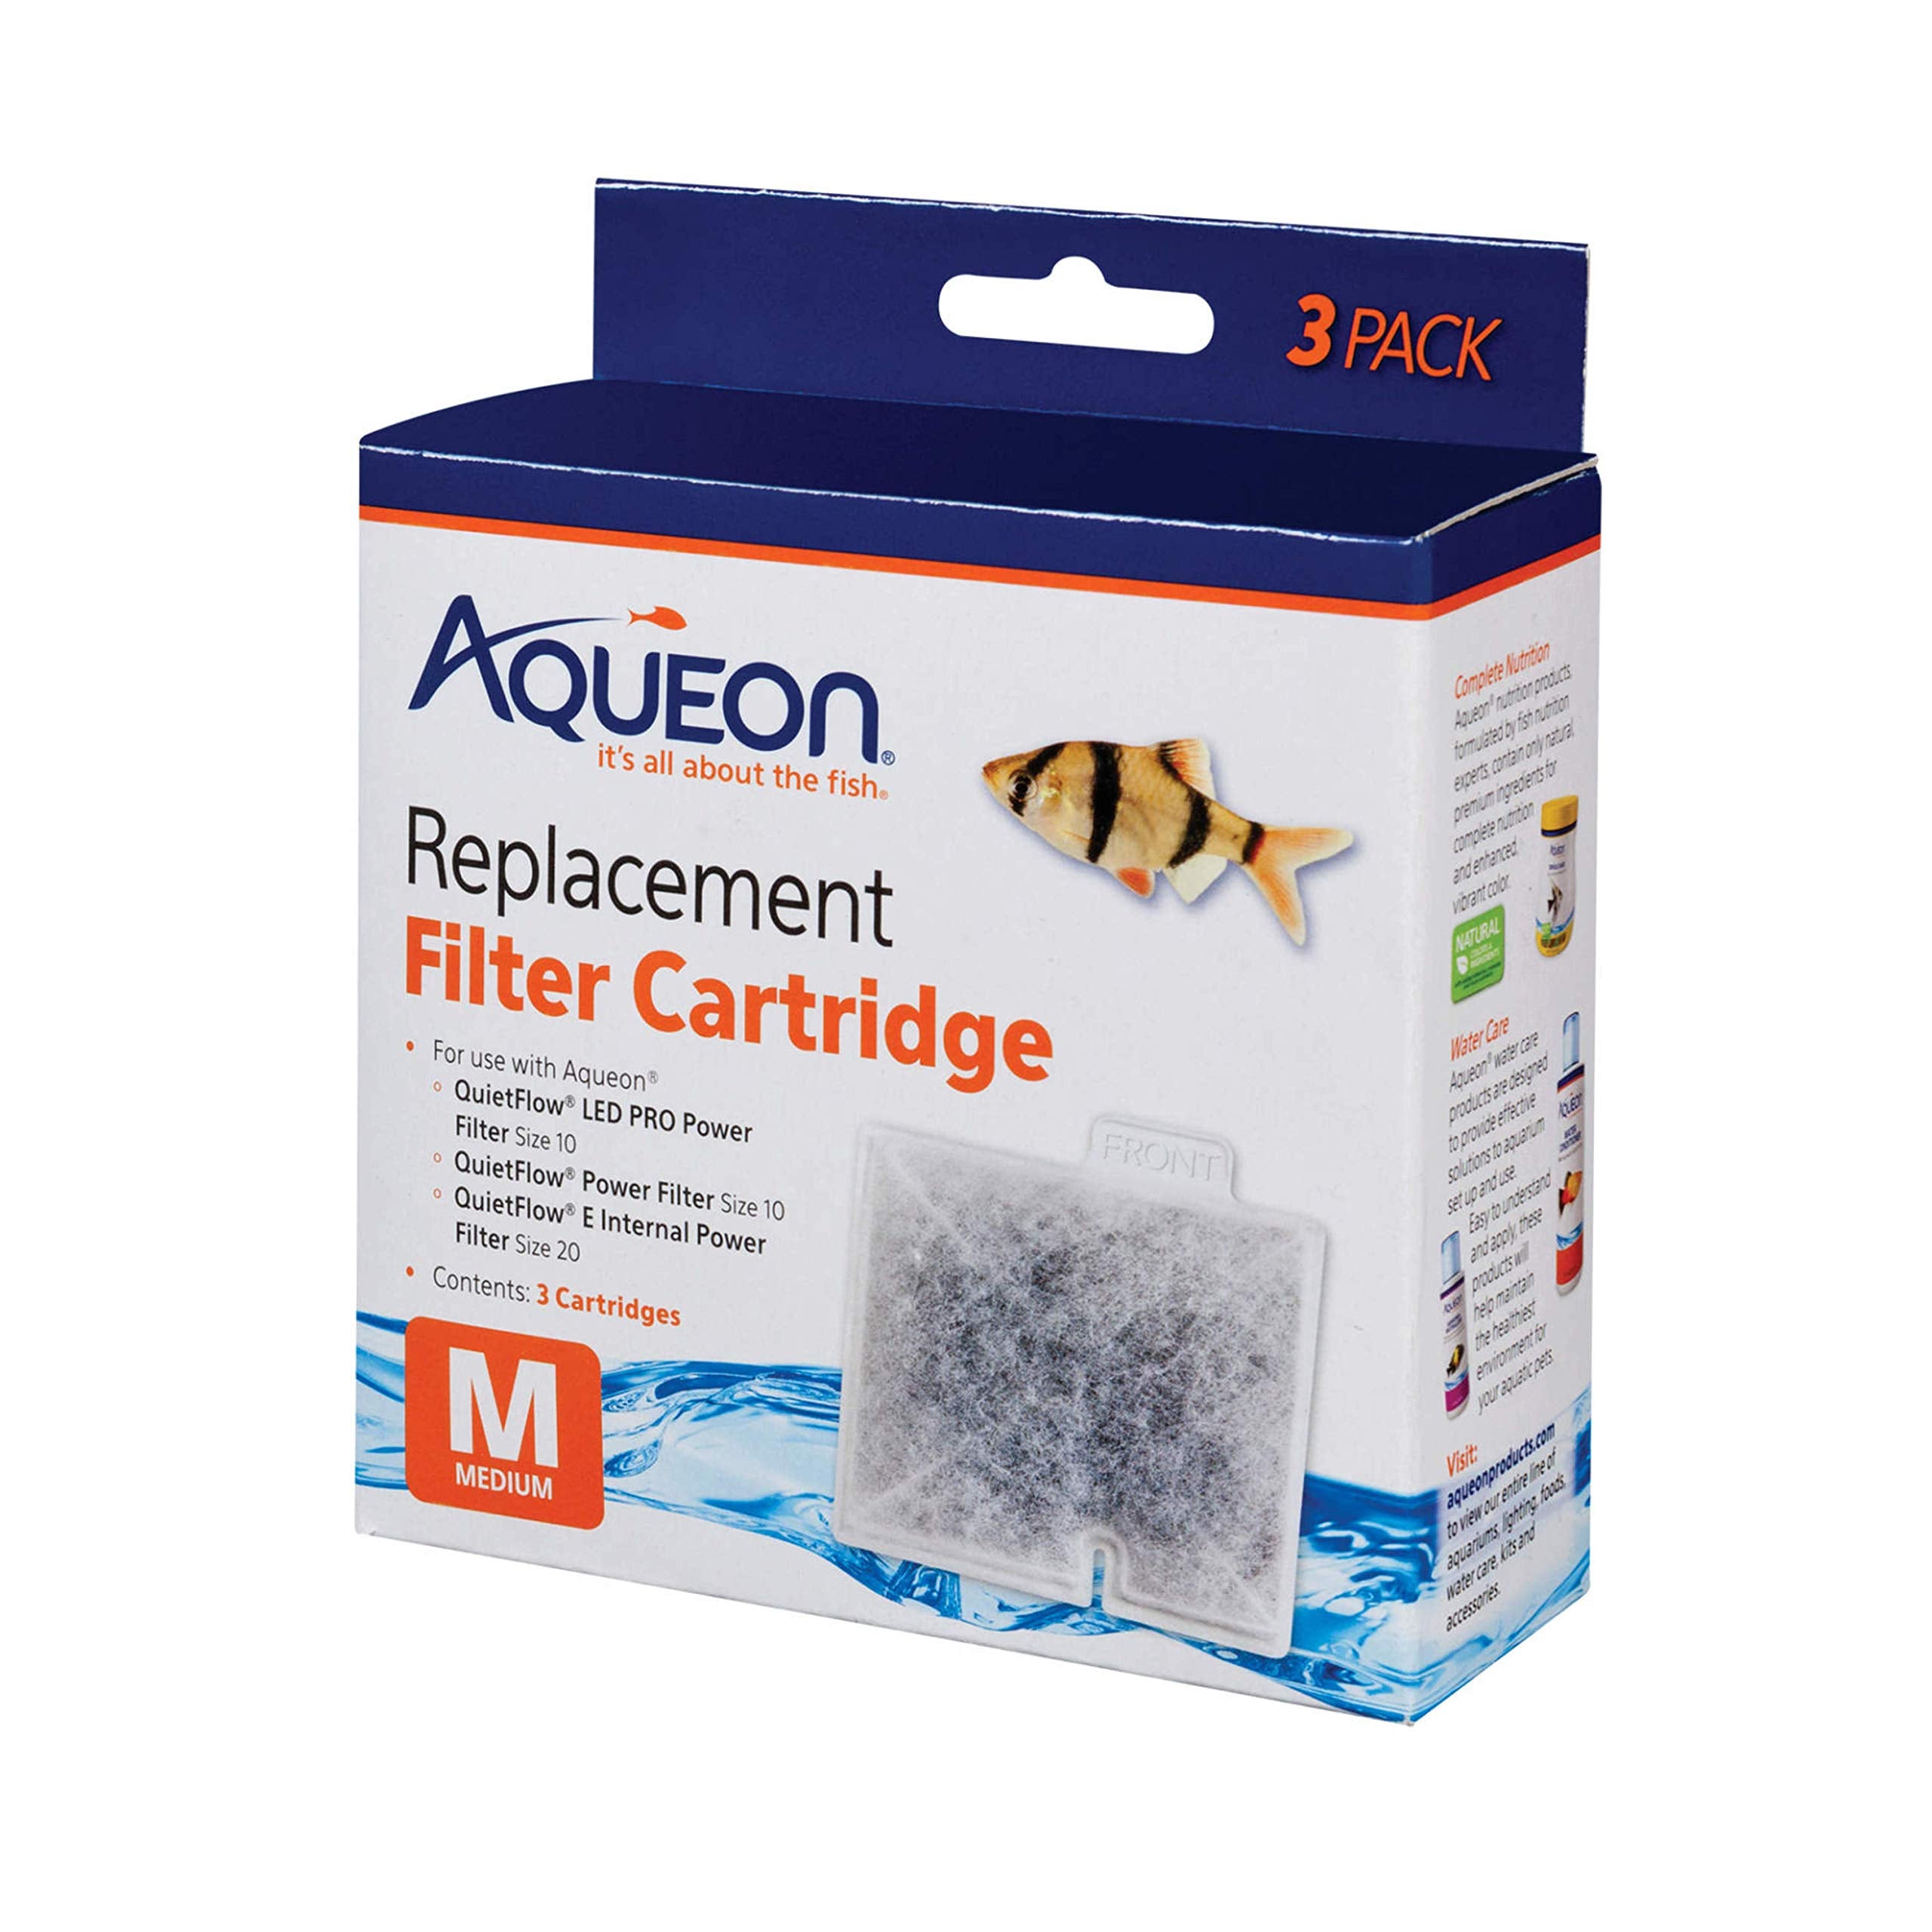 Aqueon Replacement Filter Cartridge Medium 3pk